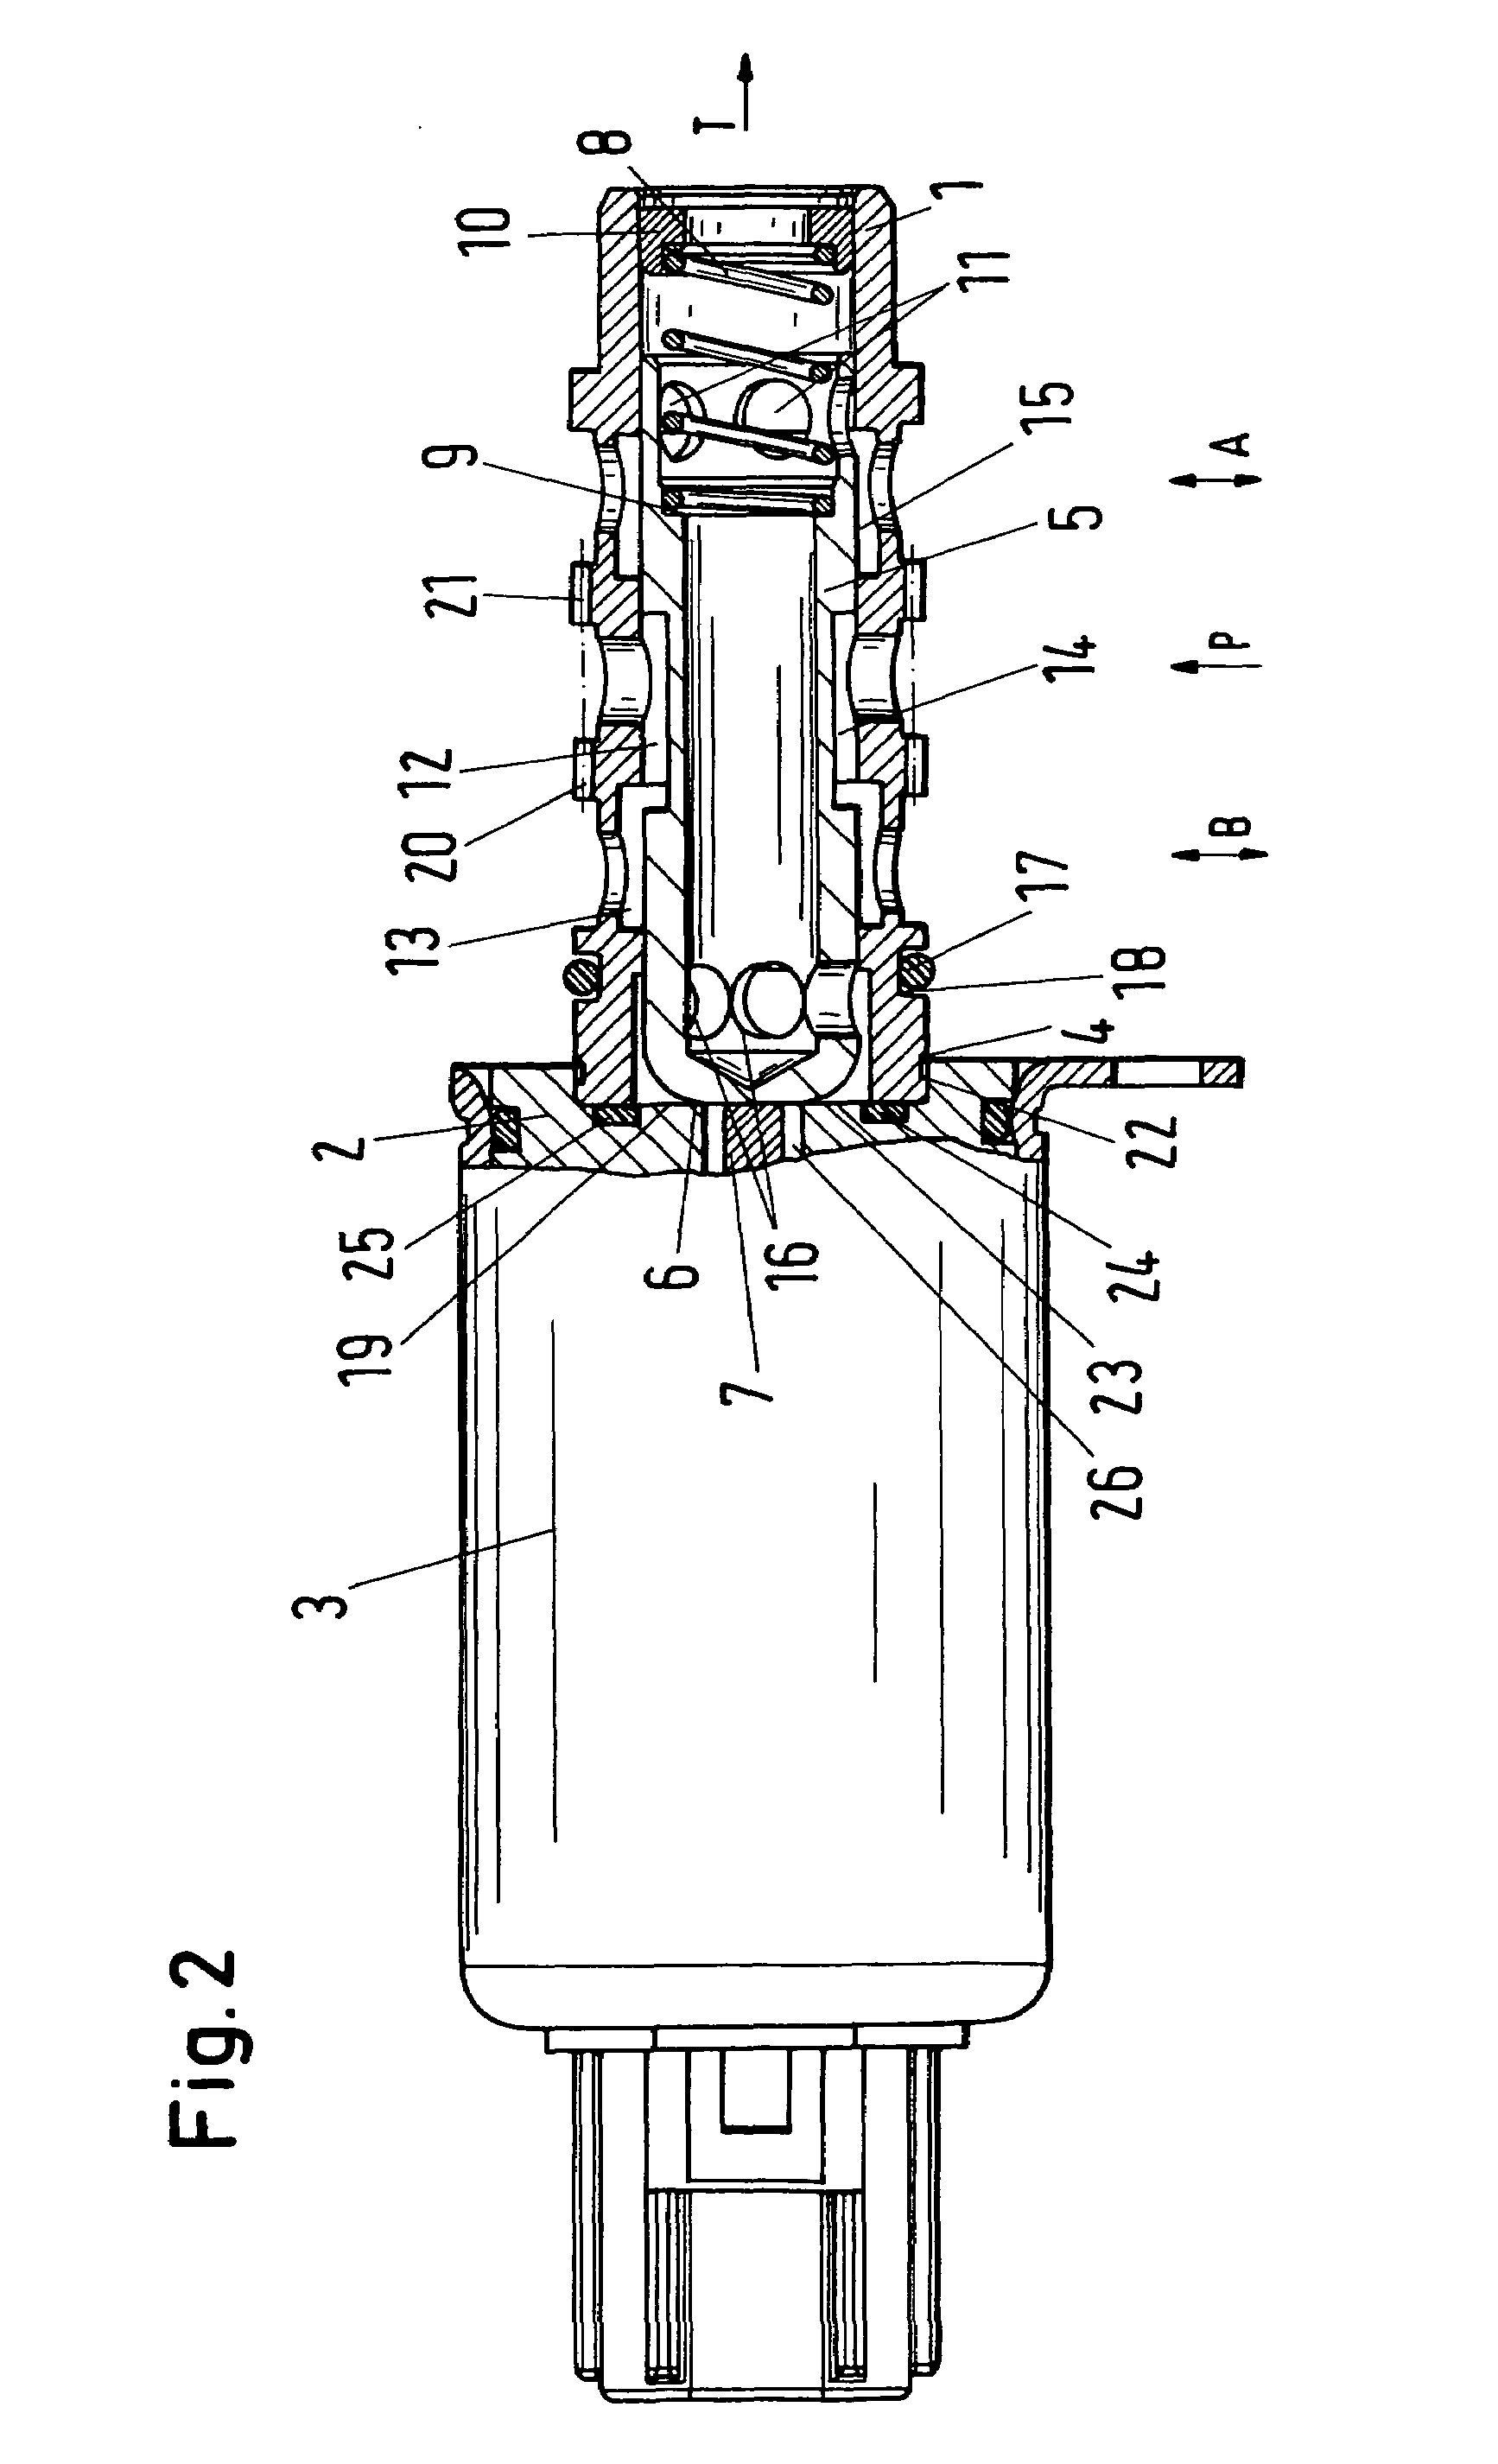 Proportional solenoid valve for a camshaft adjusting device of motor vehicles